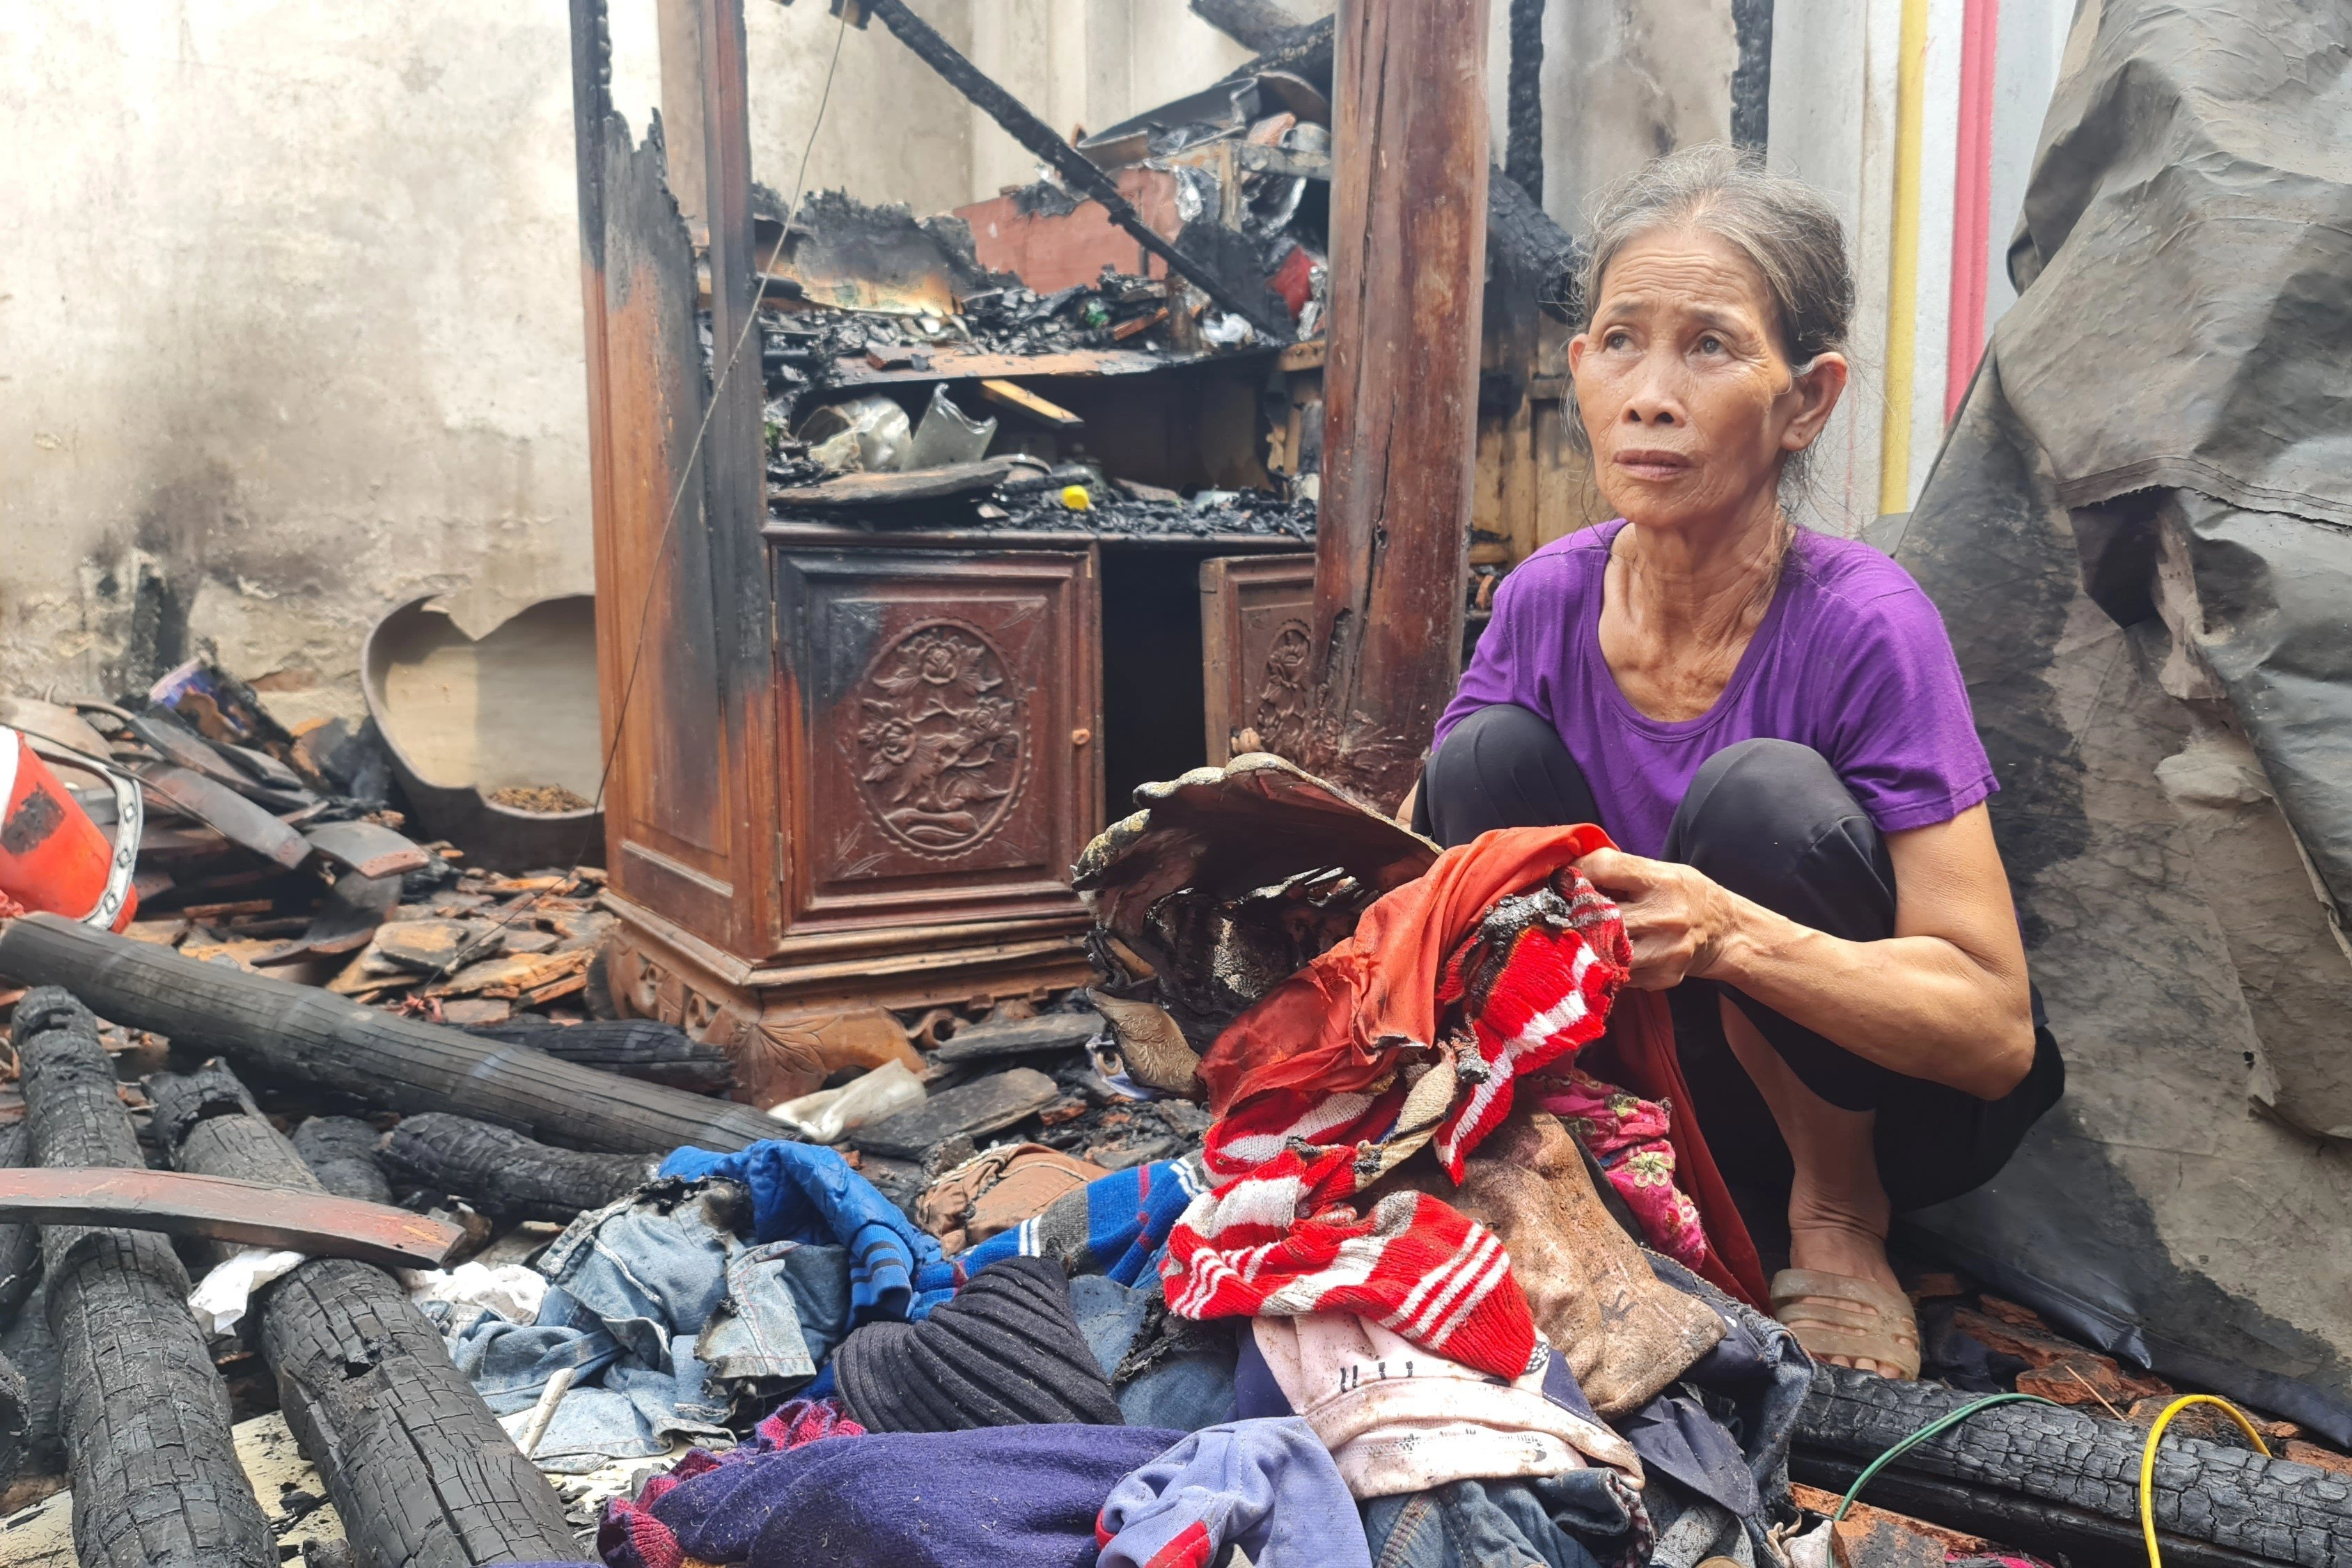 Hỏa hoạn xảy ra tại ngôi nhà kỳ lạ có đồ đạc bỗng dưng bốc cháy ở Thanh Hóa - 2